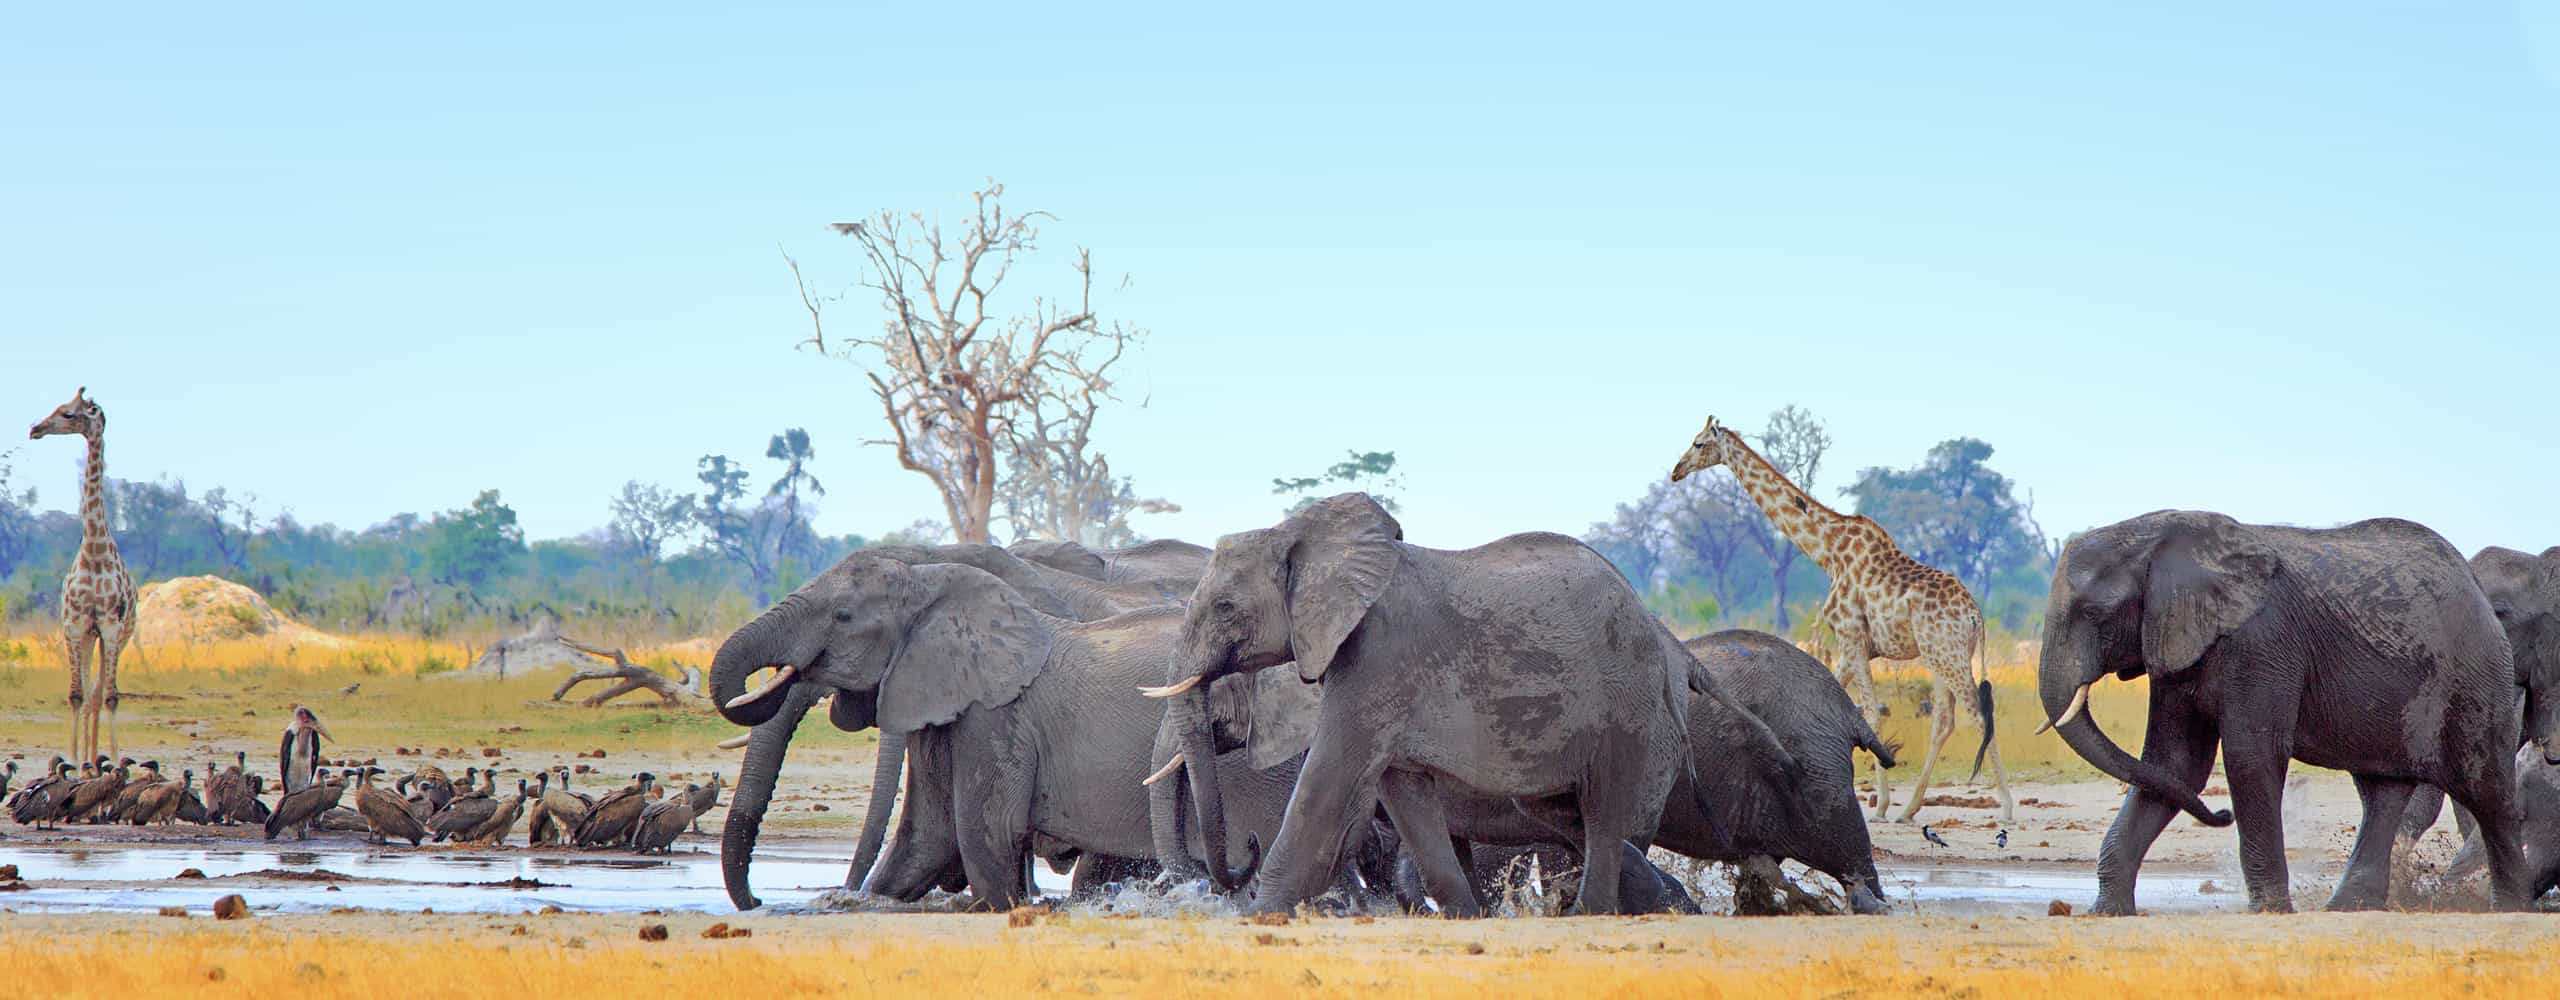 Elephants In Hwange National Park, Zimbabwe